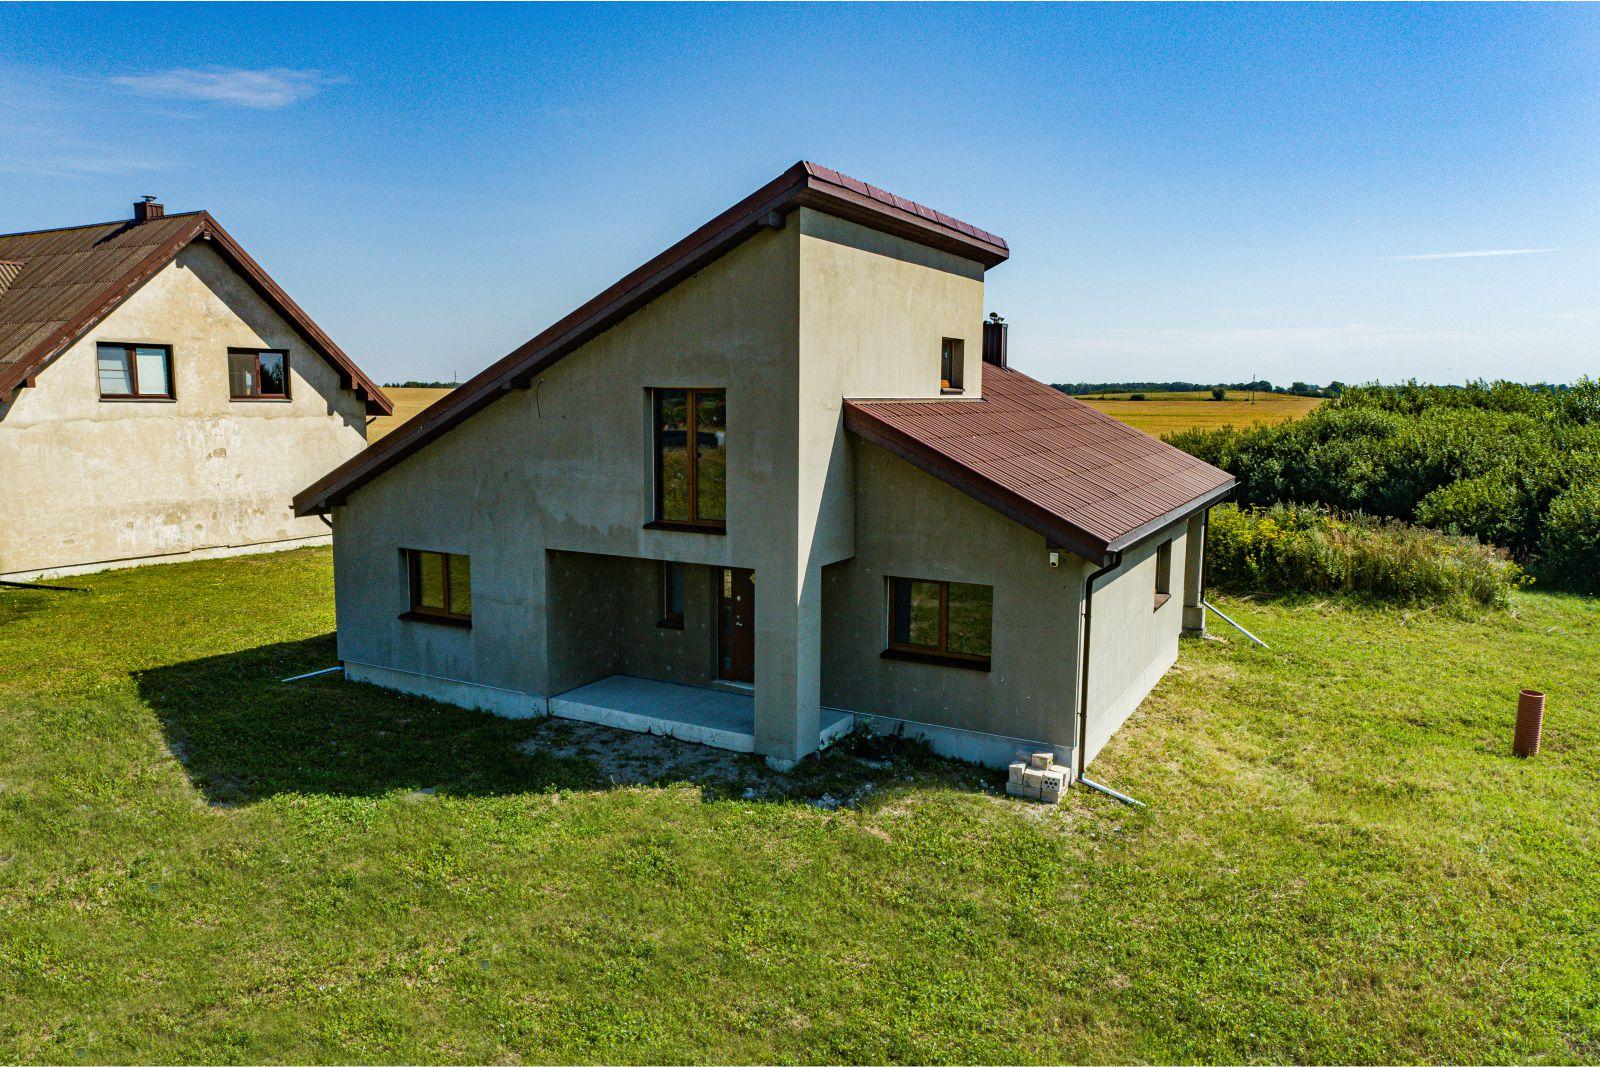 Parduodamas naujos statybos 1 aukšto su mansarda gyvenamasis namas Audros g., Peskojų k., Klaipėdos rajone.